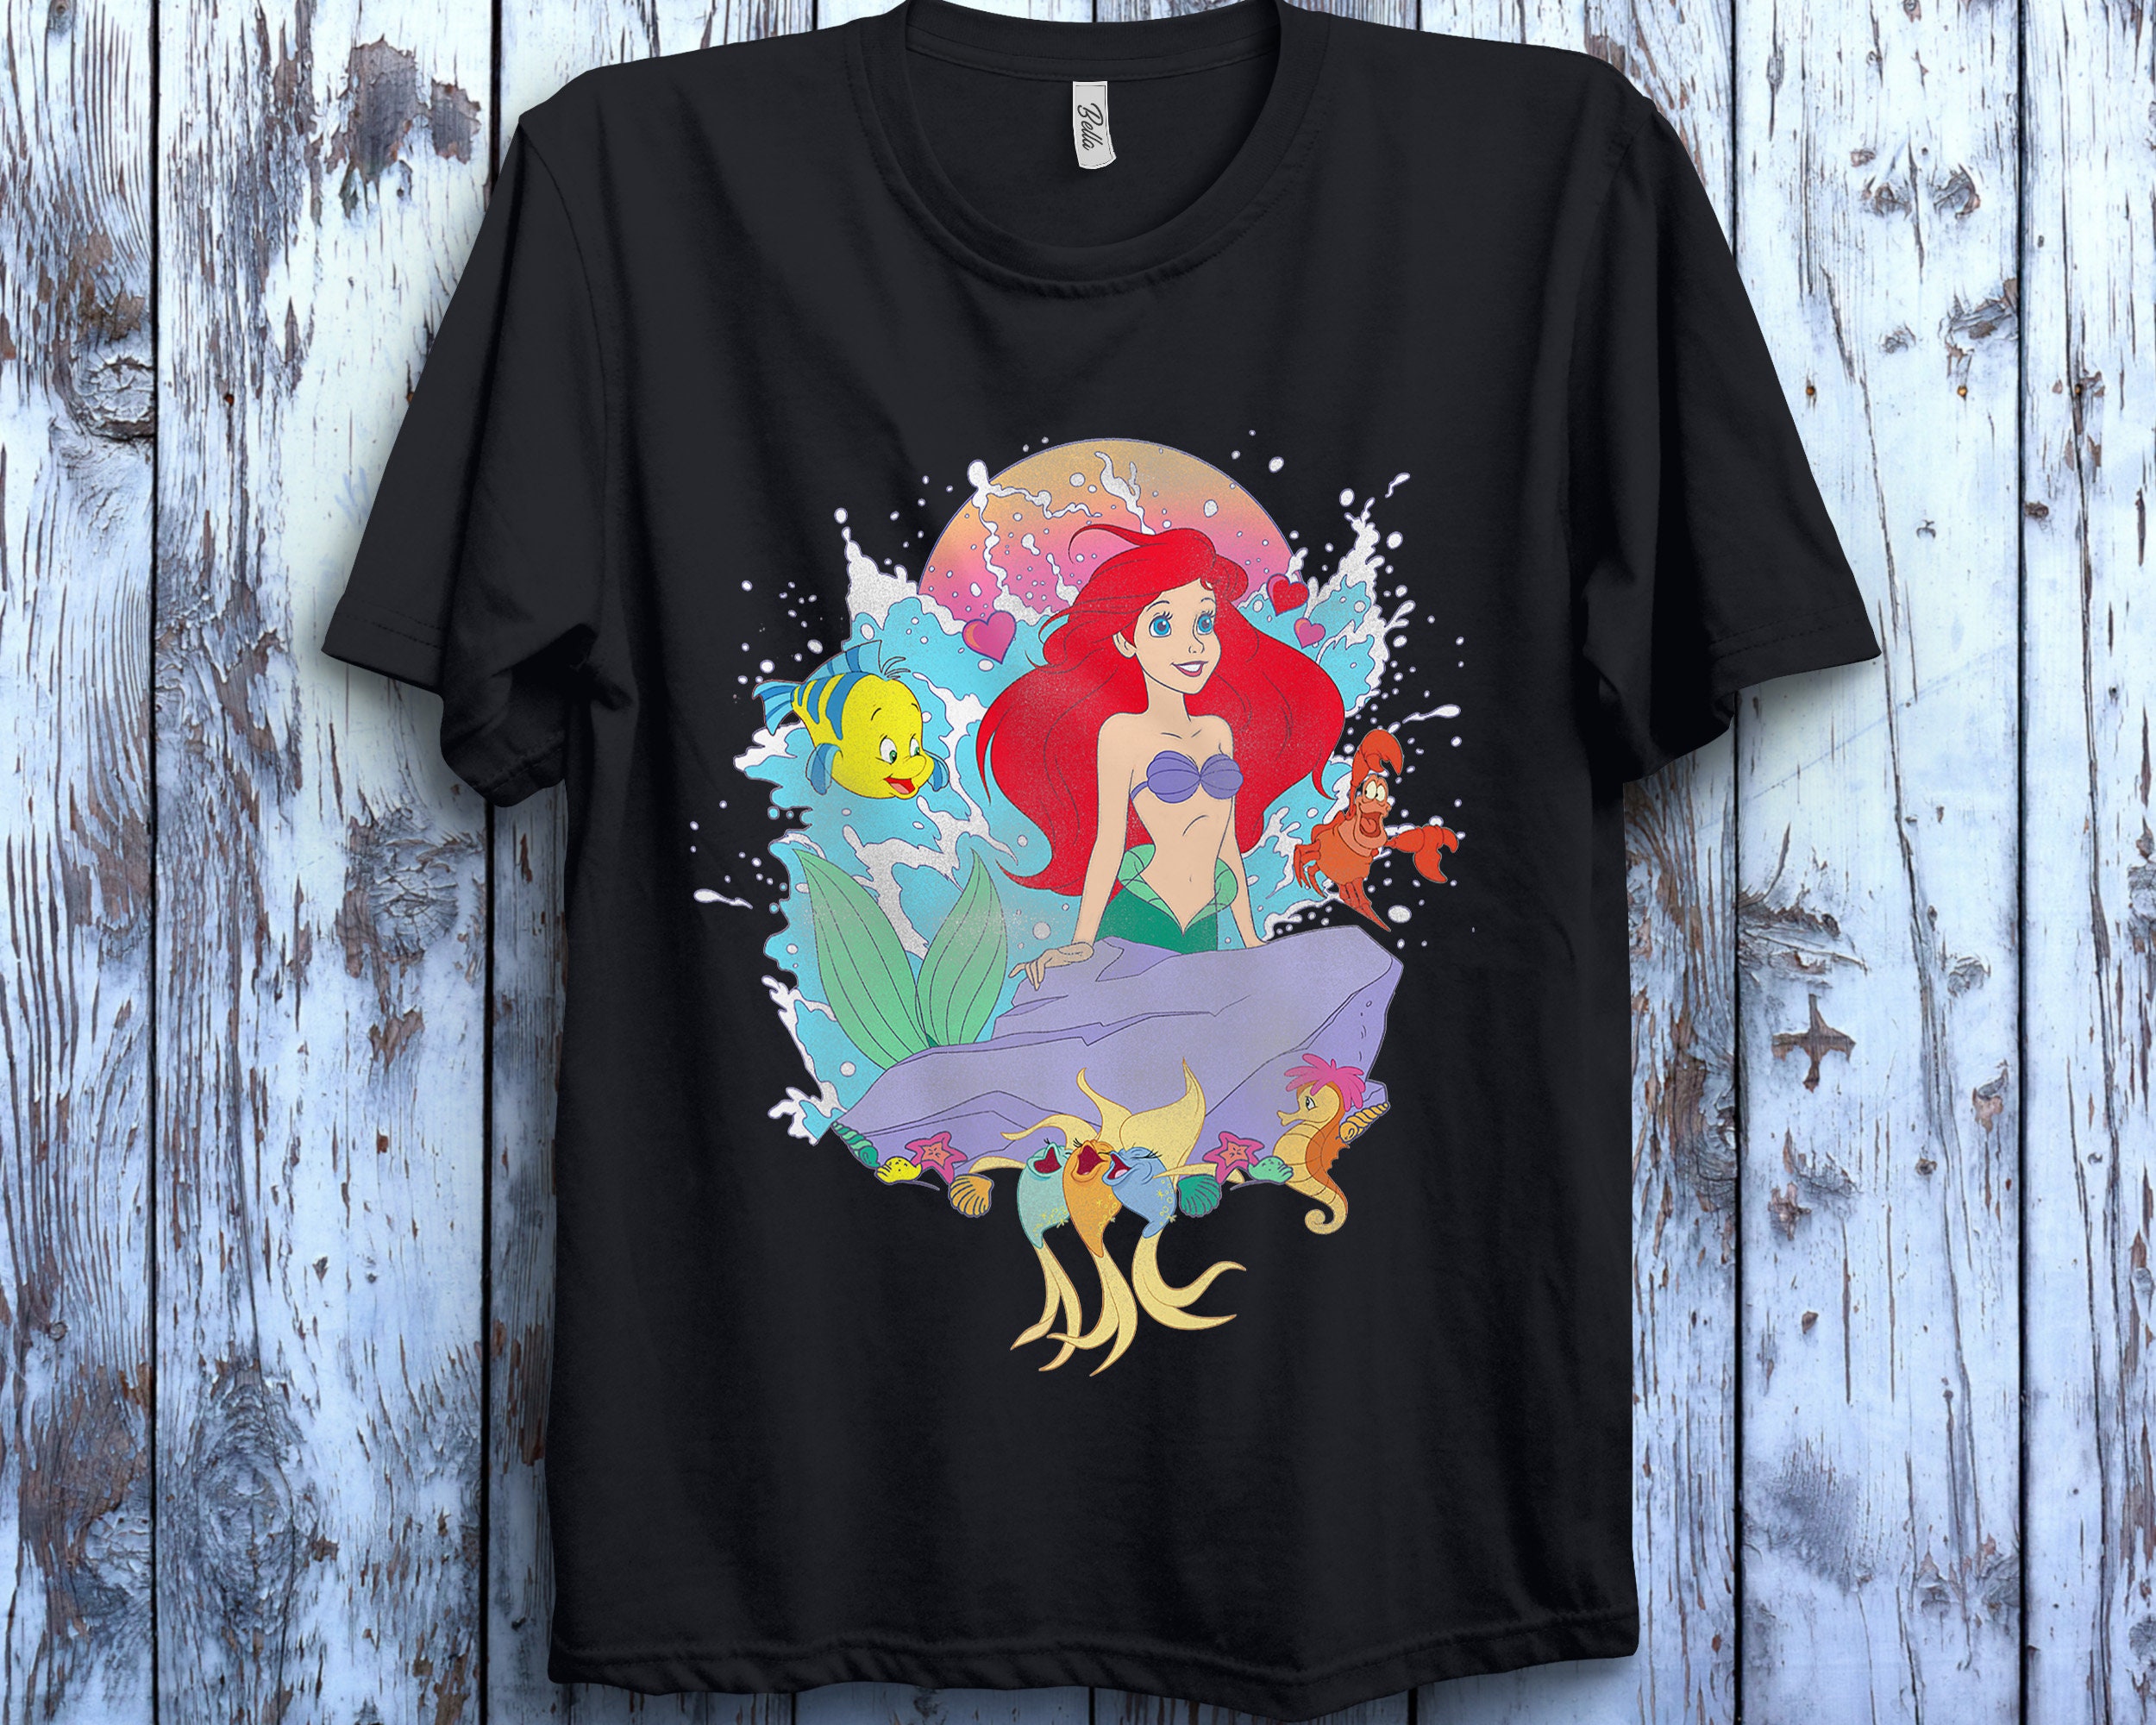 Discover Vintage Ariel Shirt, Retro Little Mermaid Shirt, Ariel Shirt, Disney Princess Shirt